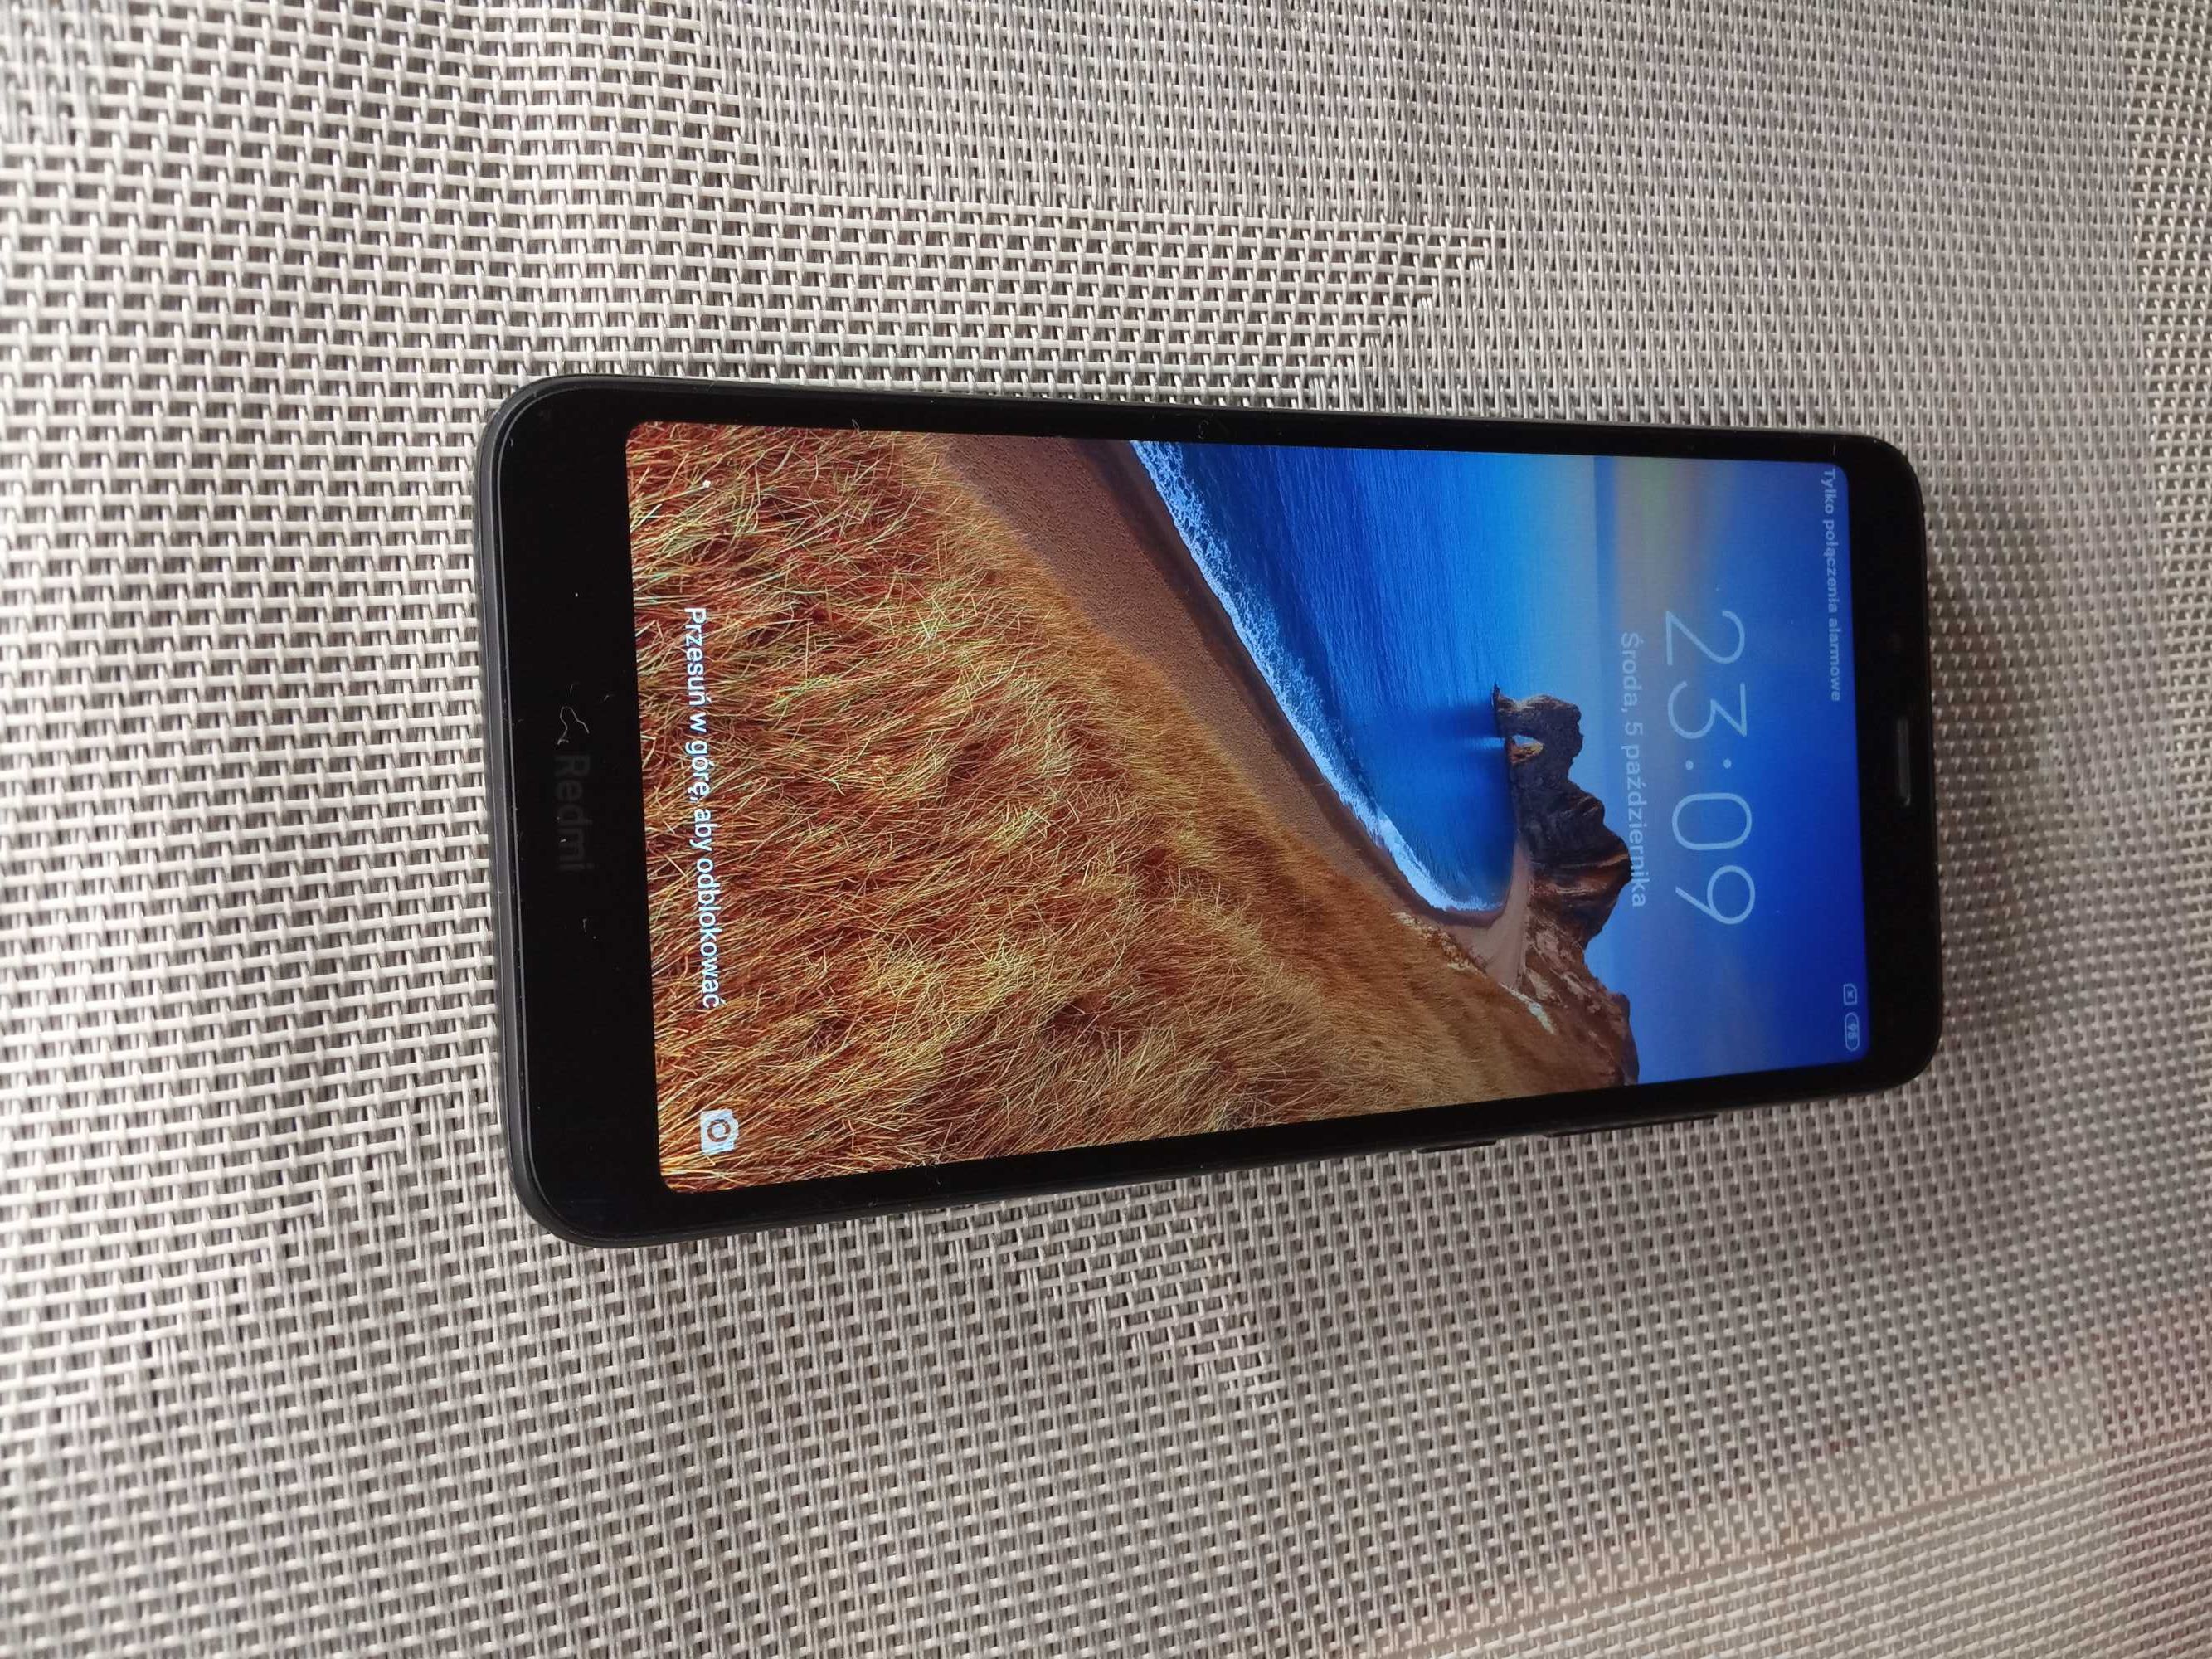 Smartfon Xiaomi Redmi 7A, android 10, 2 GB / 16 GB